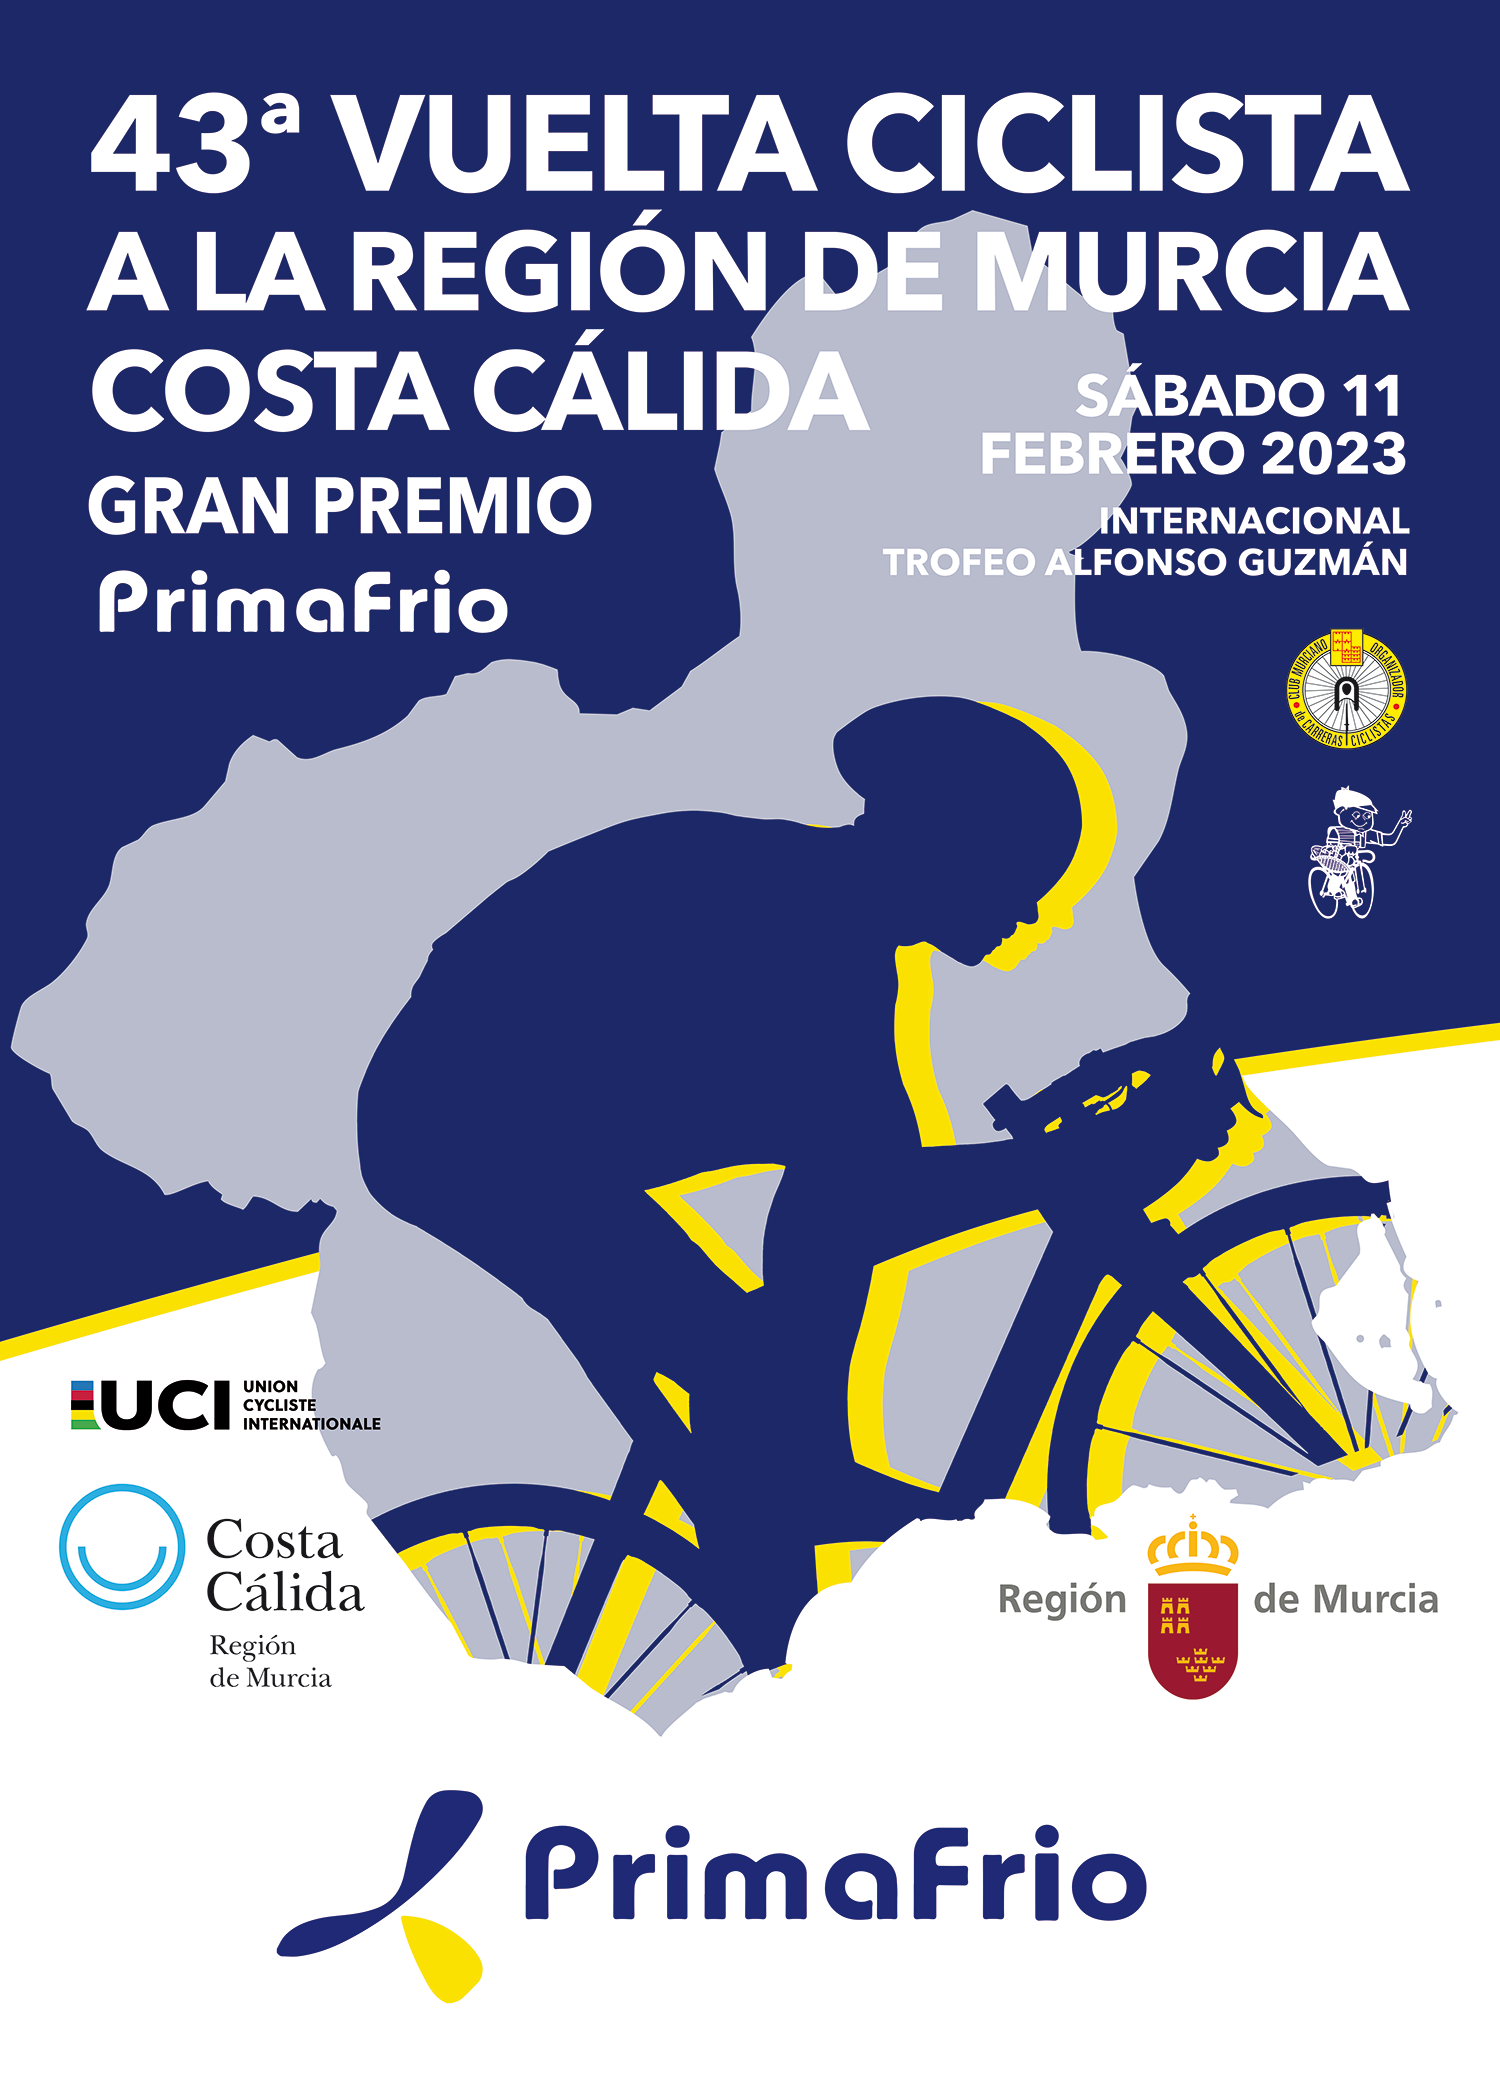 Coca retorta Fuera de borda Inicio | Vuelta Ciclista Murcia